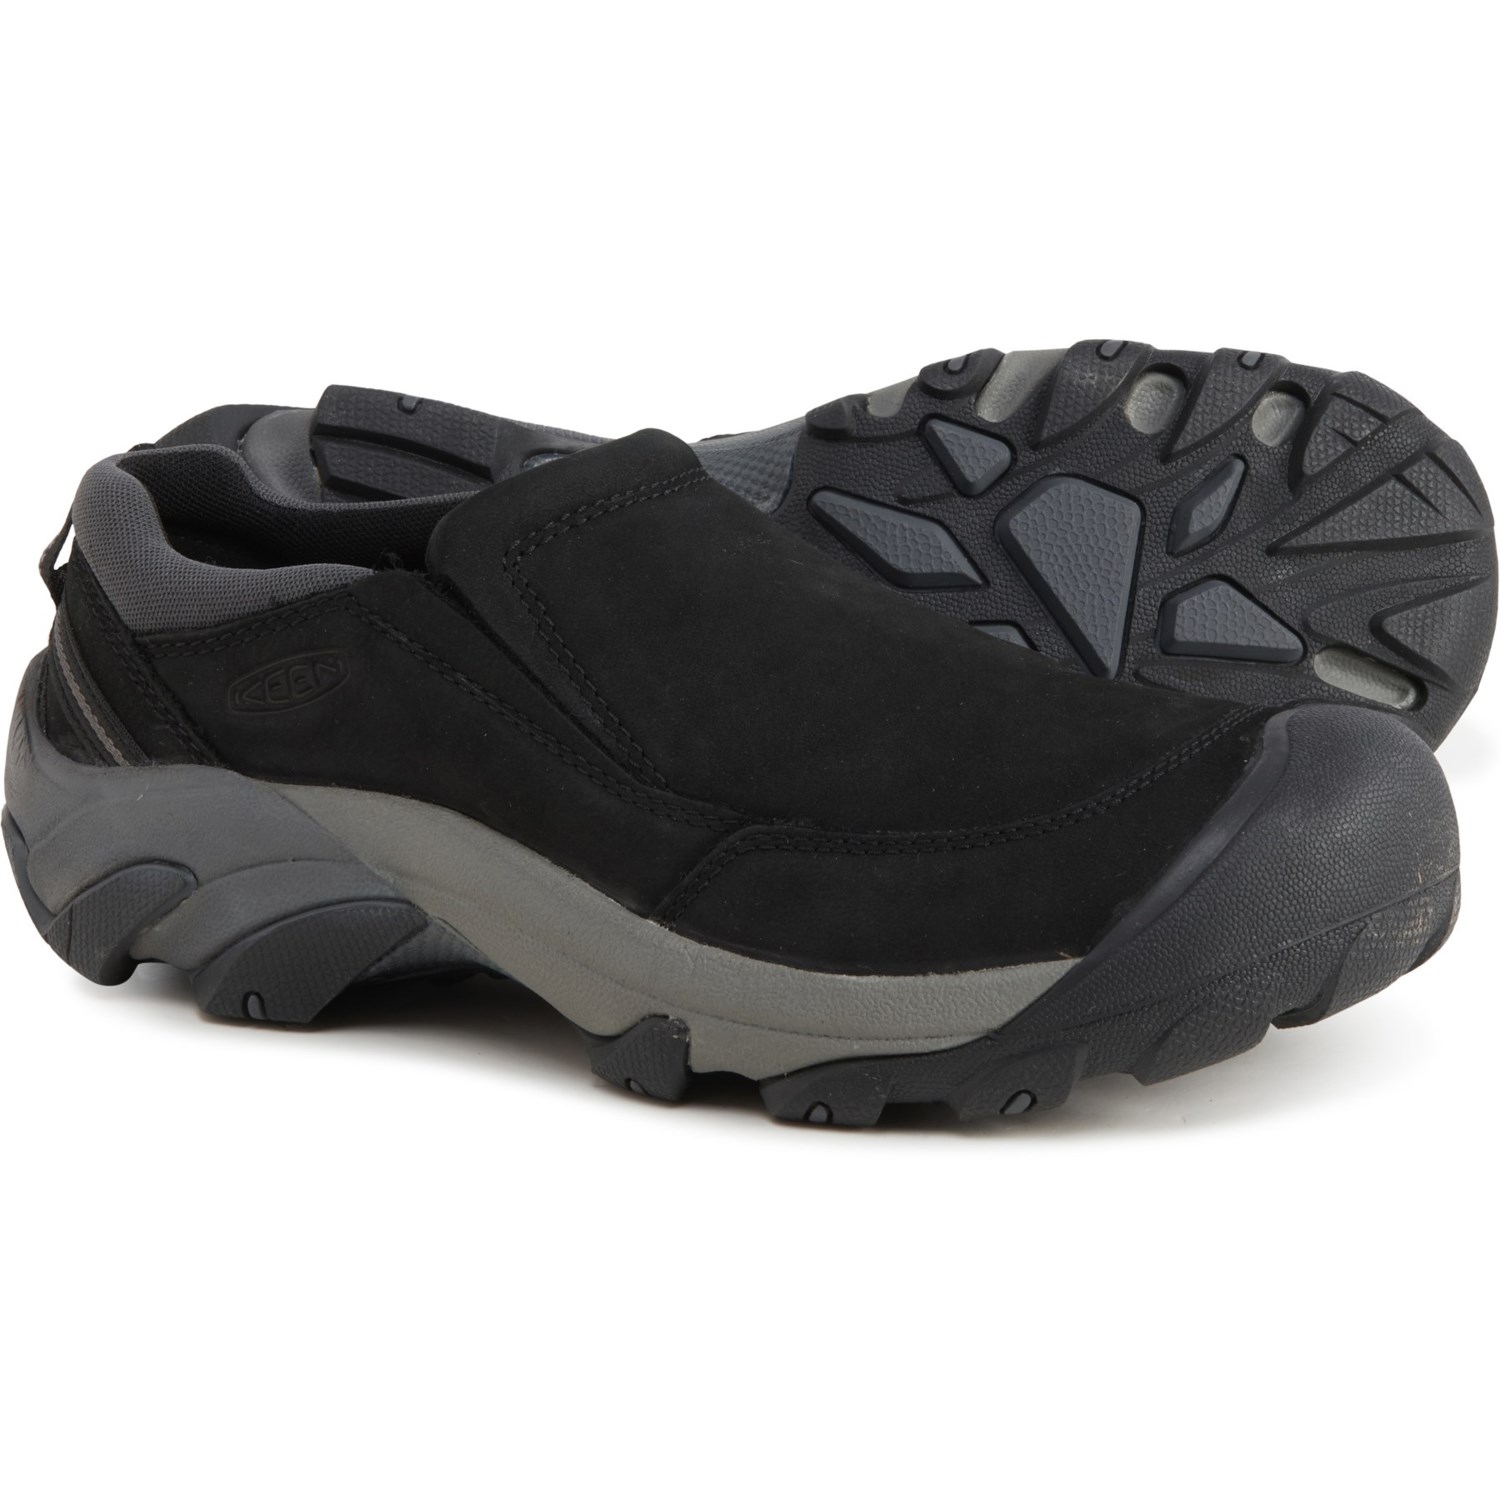 Keen Targhee II Soho Slip-On Shoes (For Men) - Save 25%